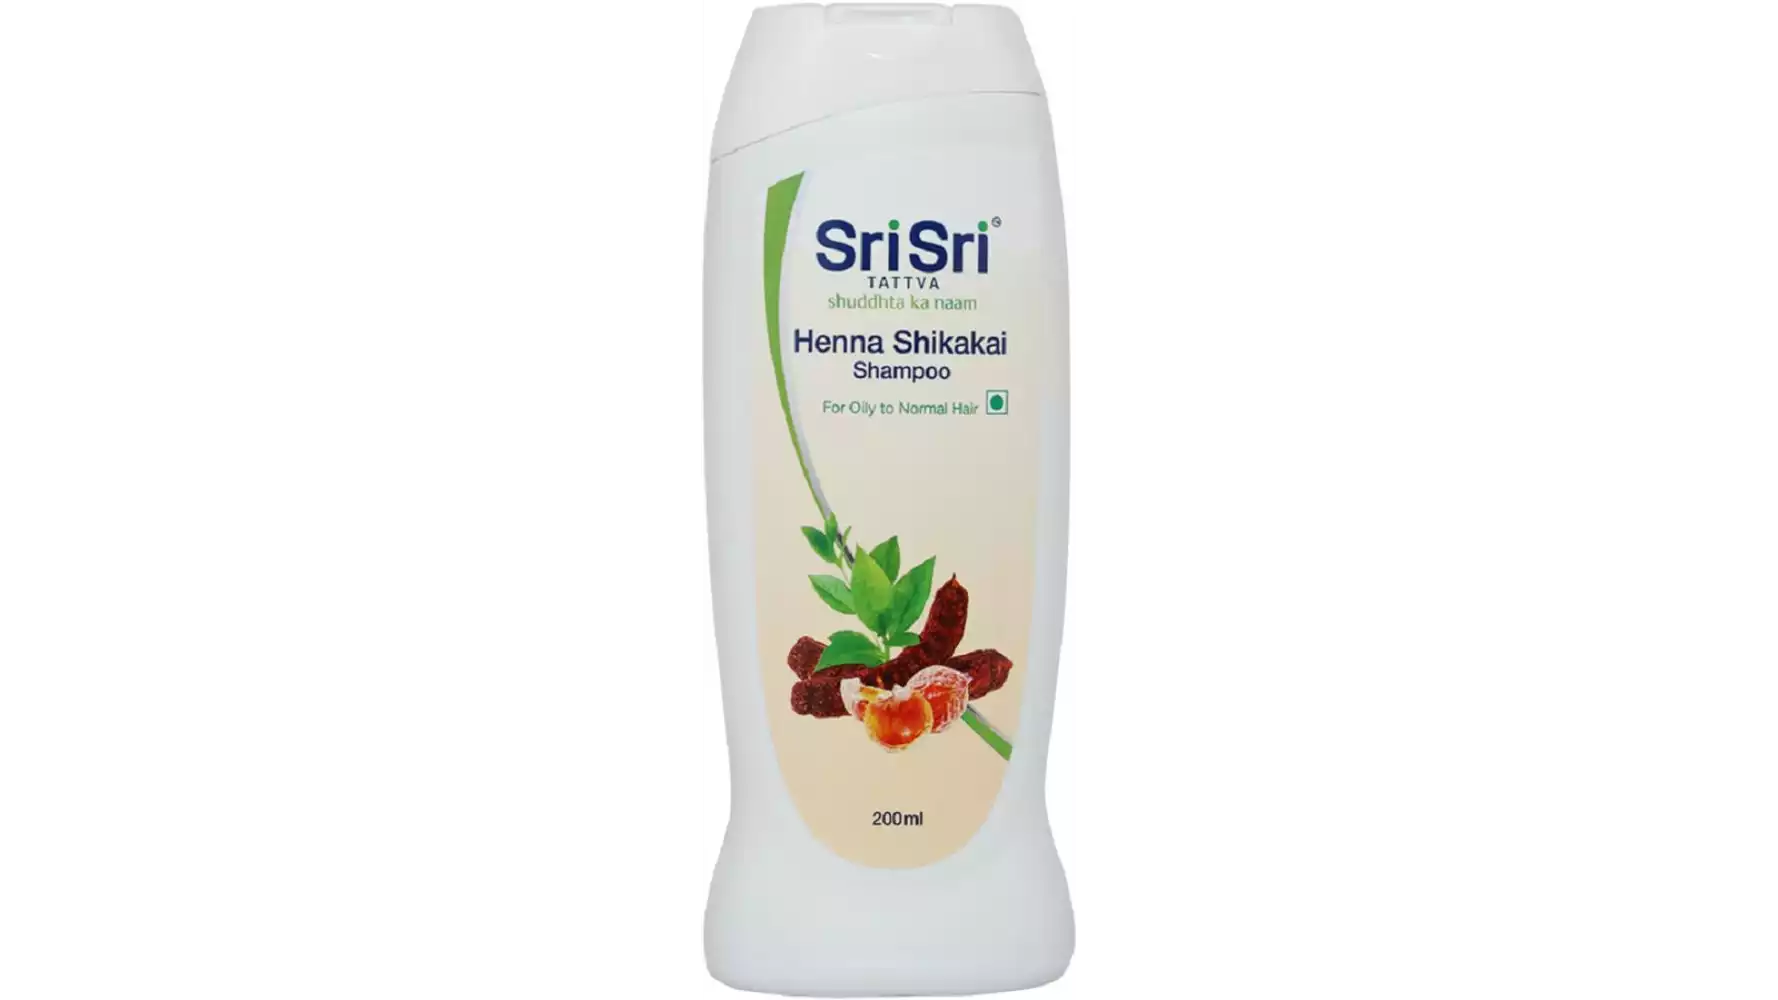 Sri Sri Tattva Henna Shikakai Shampoo (200ml)